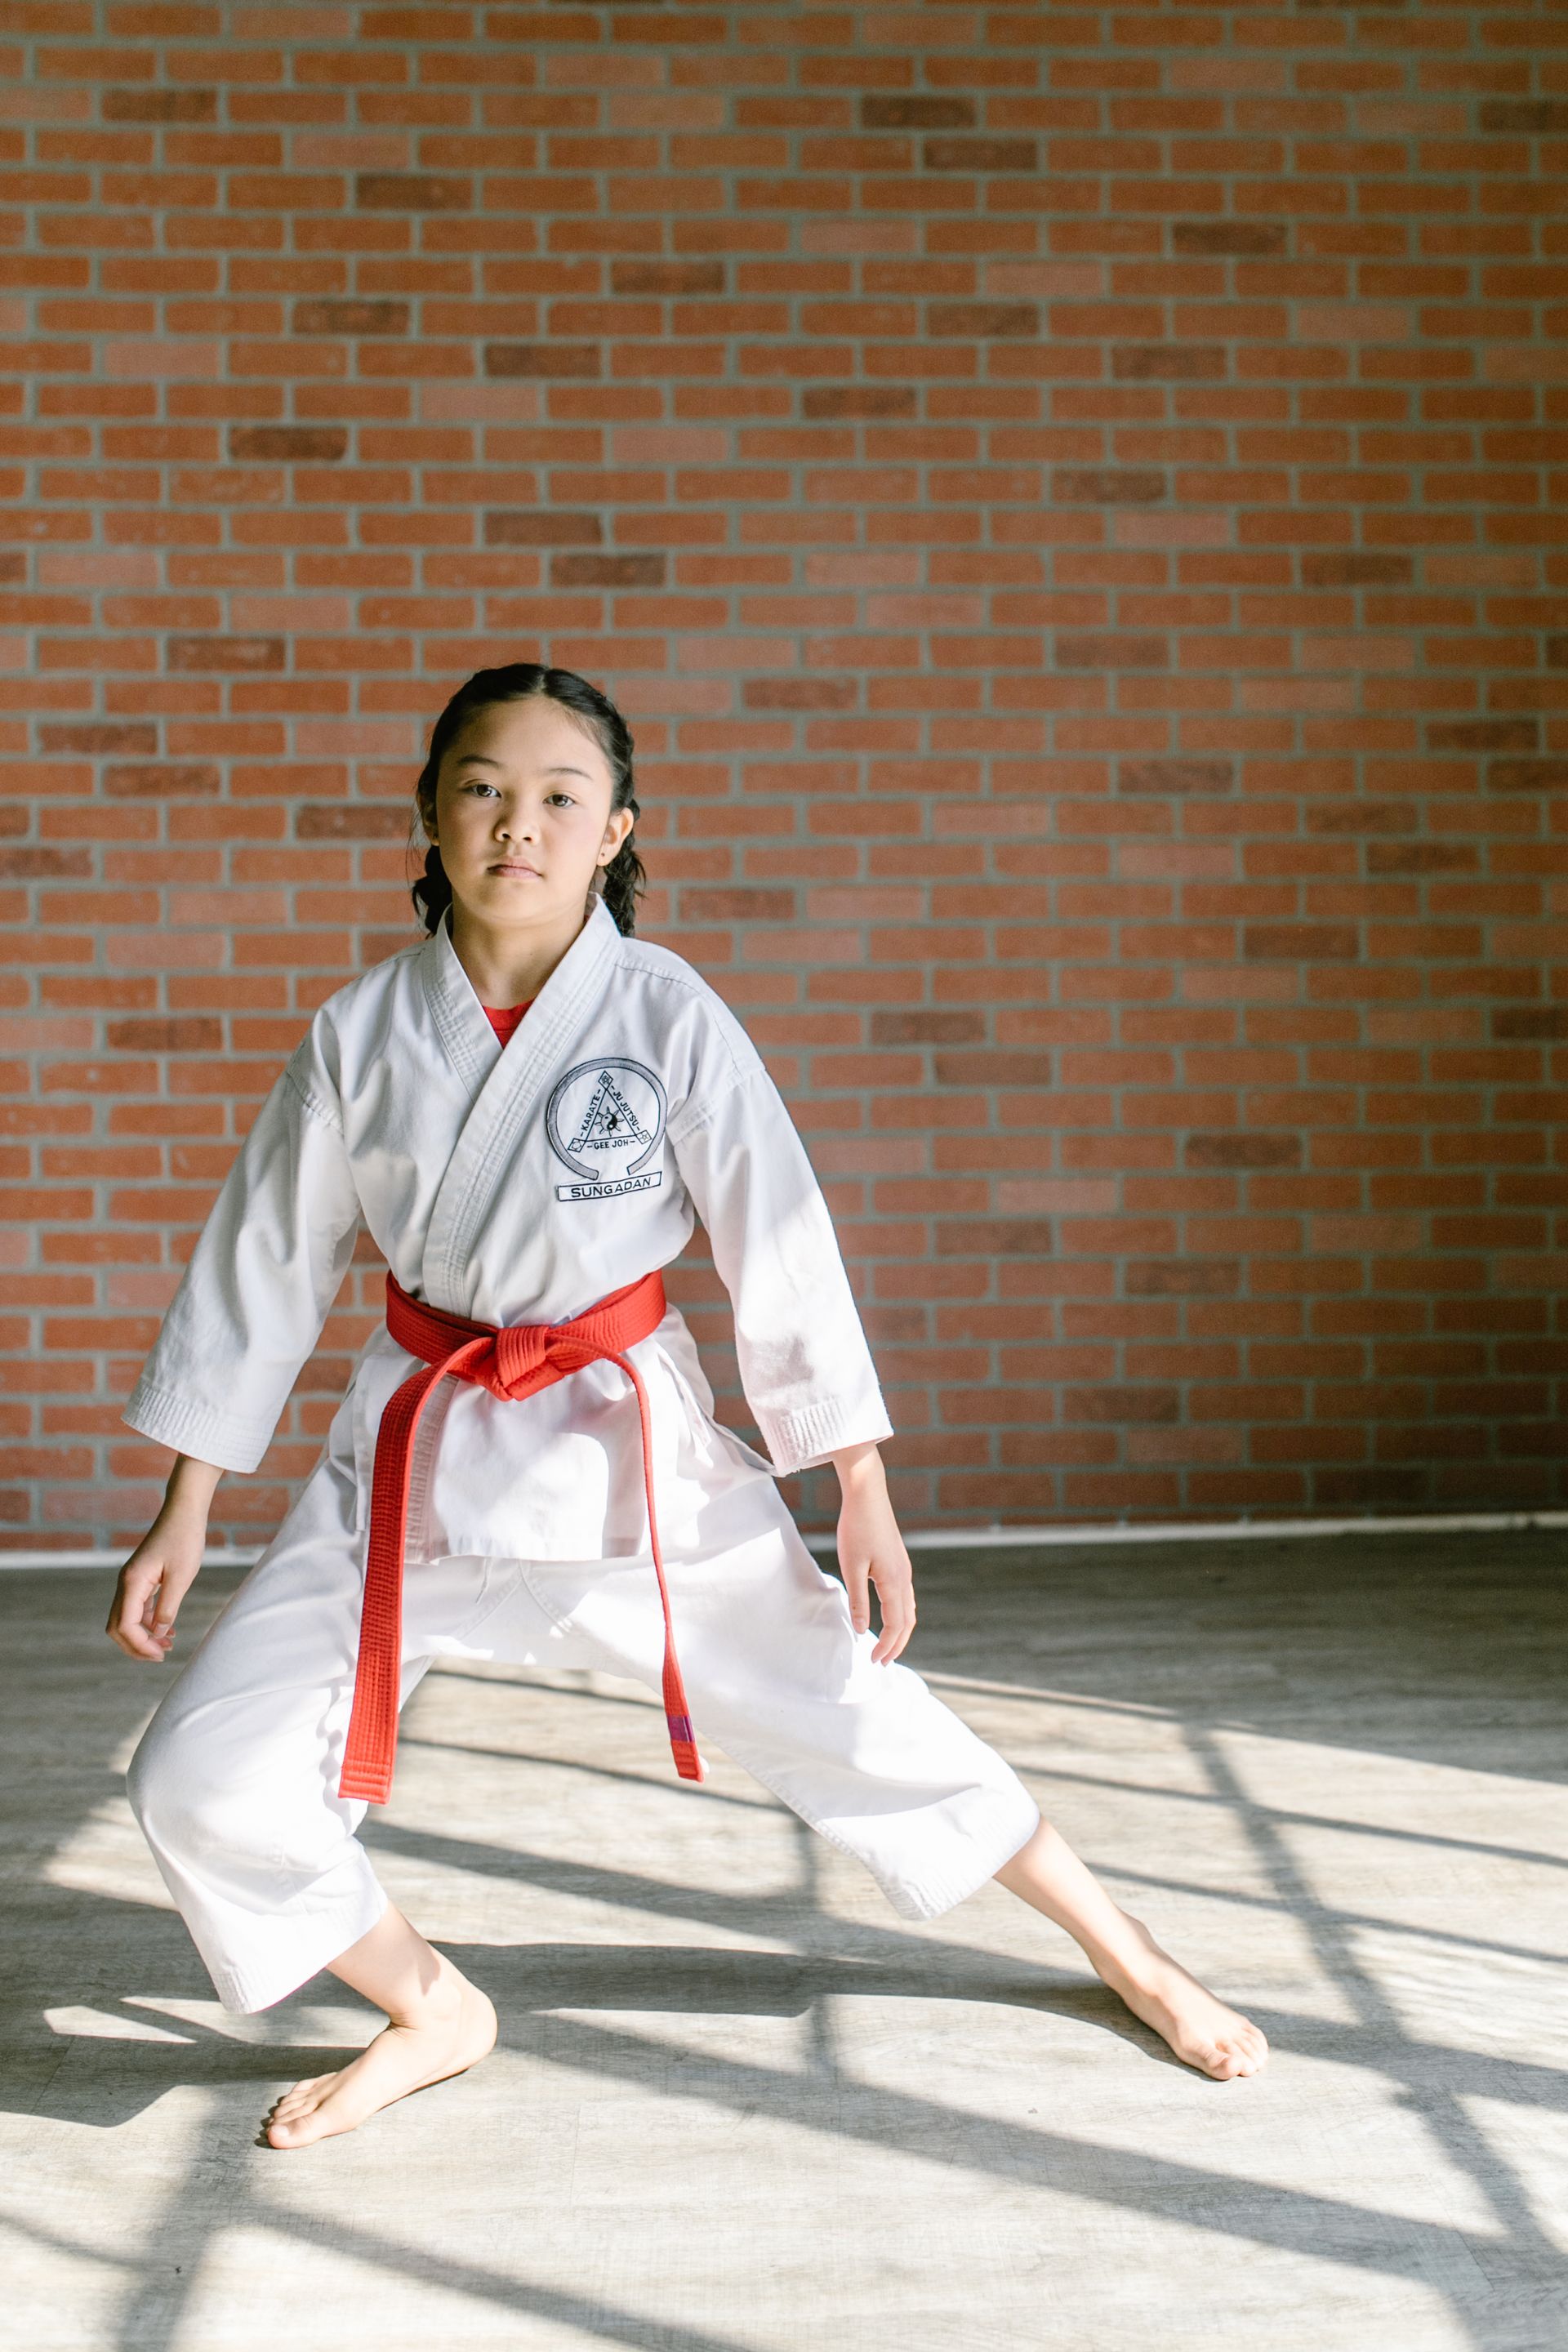 Een jong meisje in een wit karate-uniform met een rode riem staat voor een bakstenen muur.